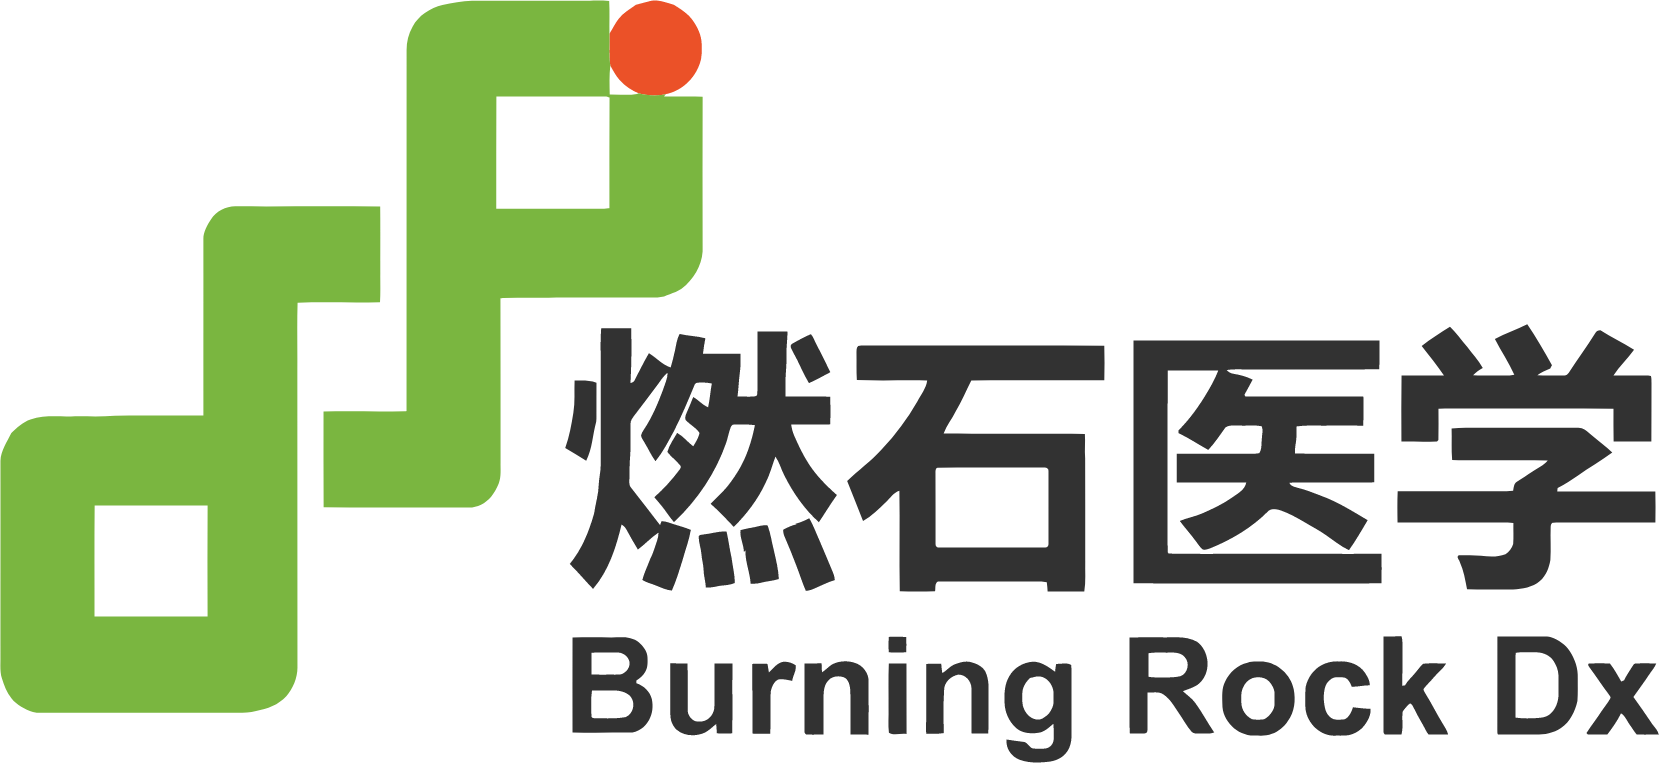 Burning Rock Biotech logo large (transparent PNG)